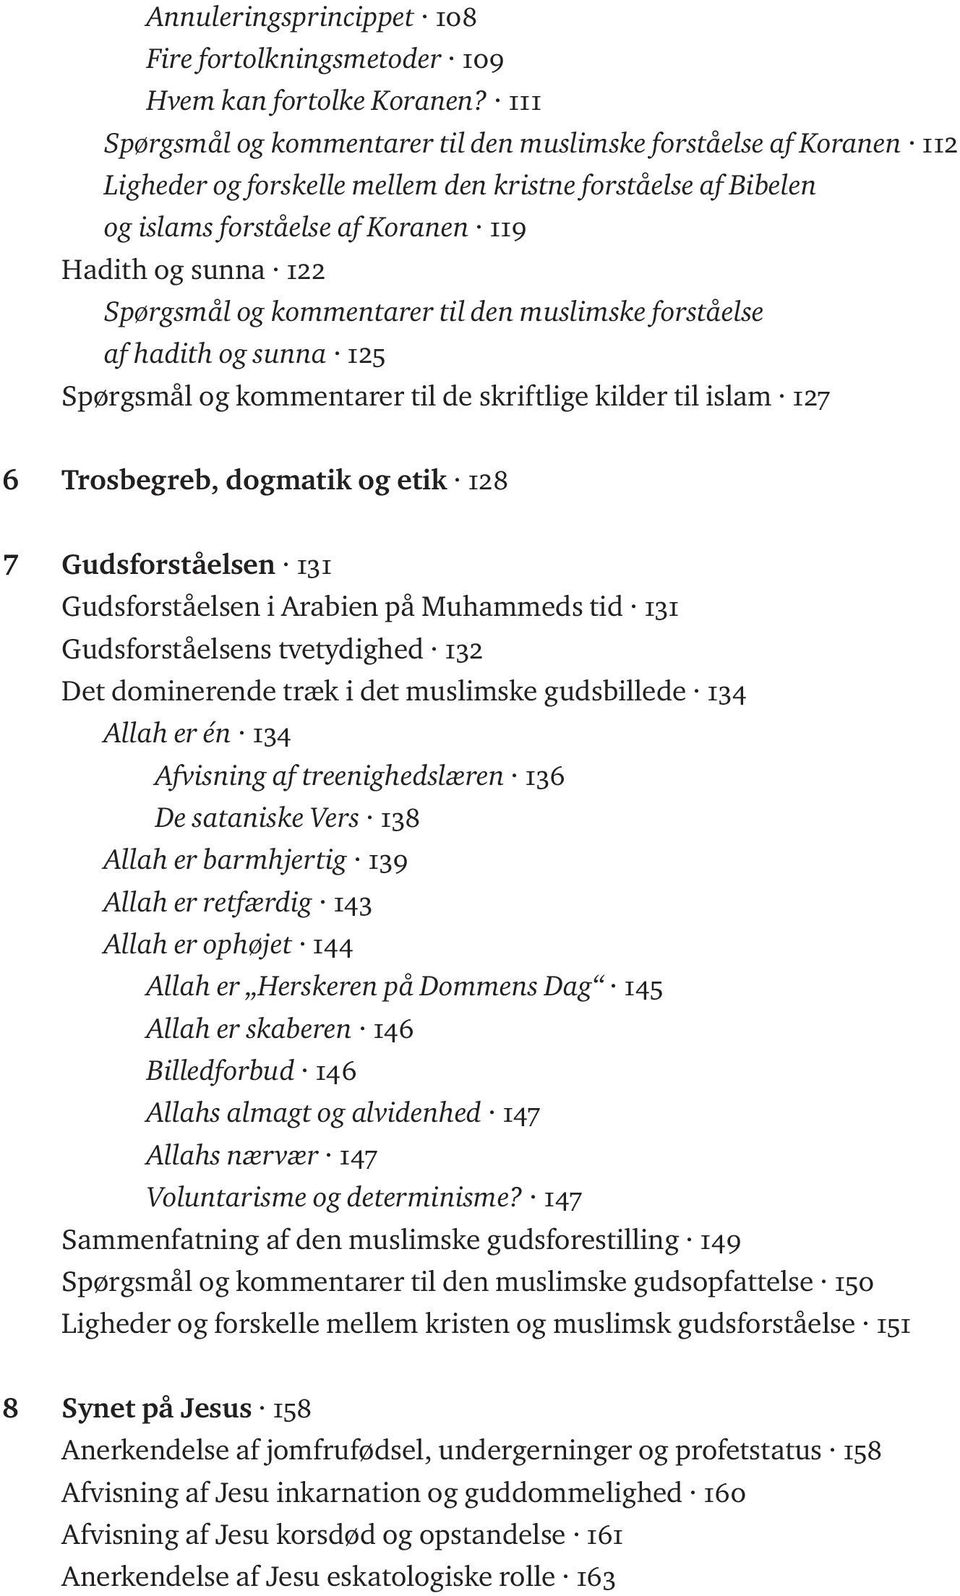 Spørgsmål og kommentarer til den muslimske forståelse af hadith og sunna 125 Spørgsmål og kommentarer til de skriftlige kilder til islam 127 6 Trosbegreb, dogmatik og etik 128 7 Gudsforståelsen 131